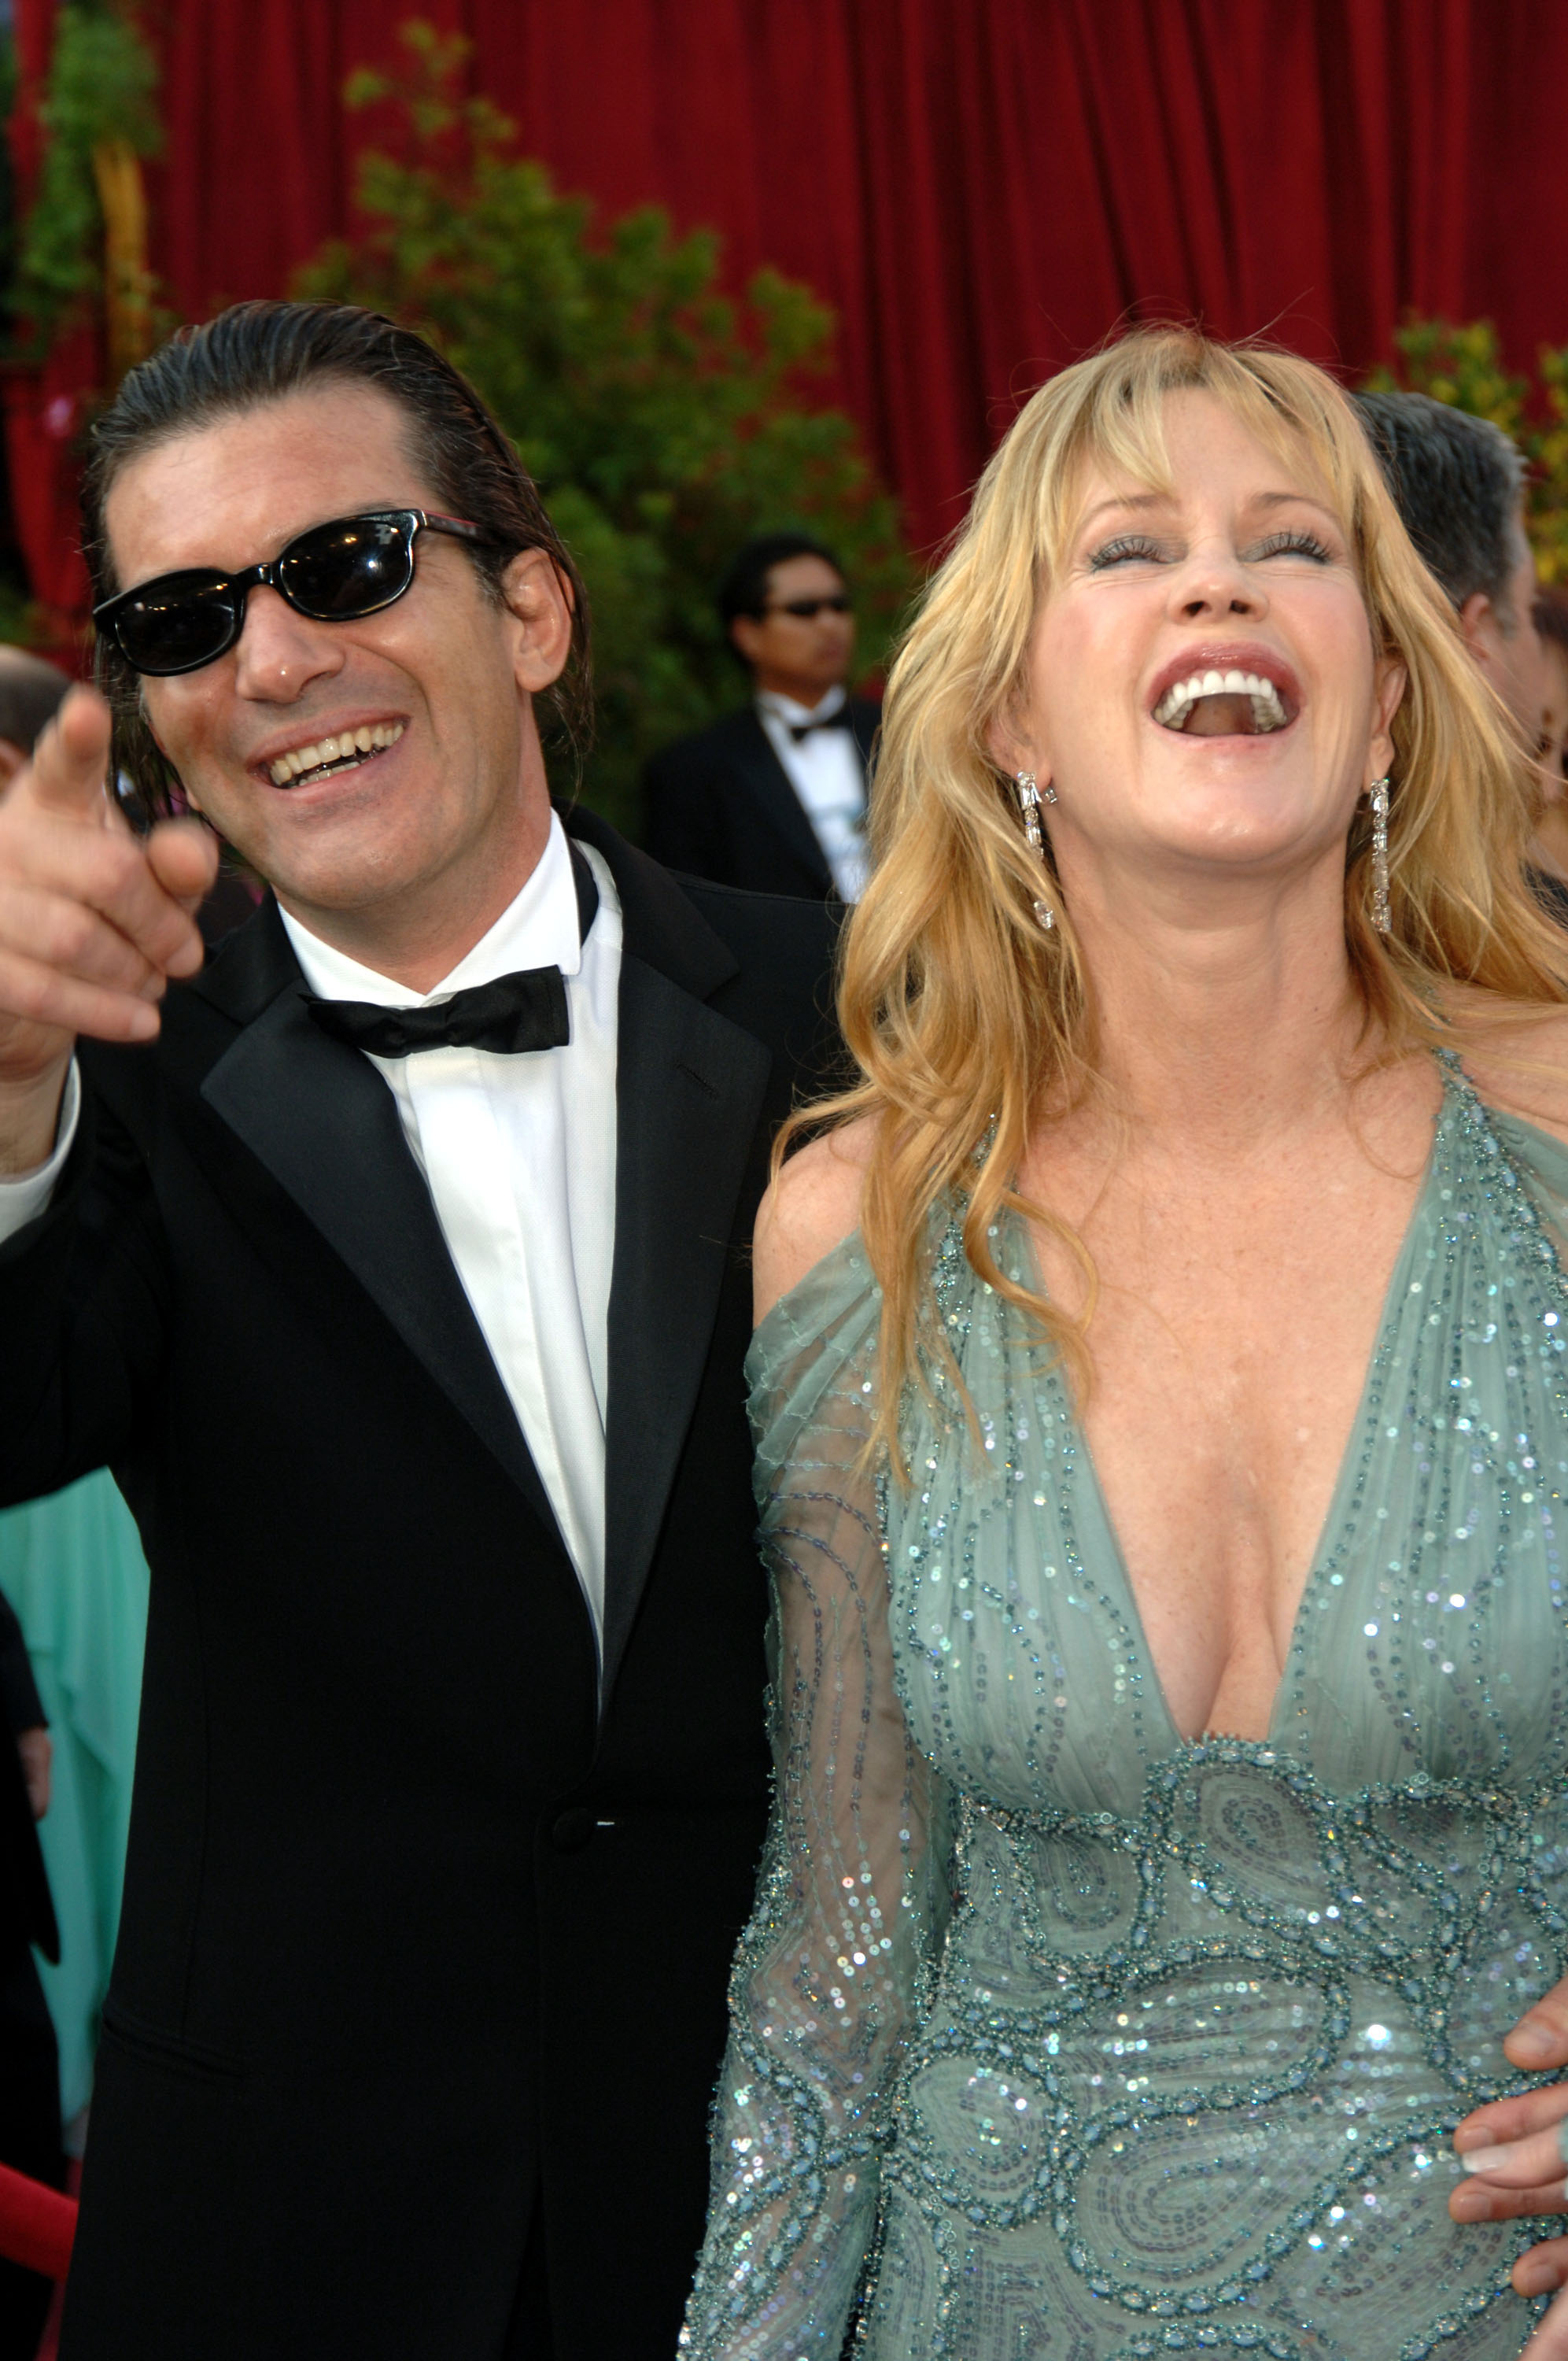 Antonio Banderas et Melanie Griffith lors de la 77e cérémonie annuelle des Oscars à Los Angeles, Californie en 2005 | Source : Getty Images